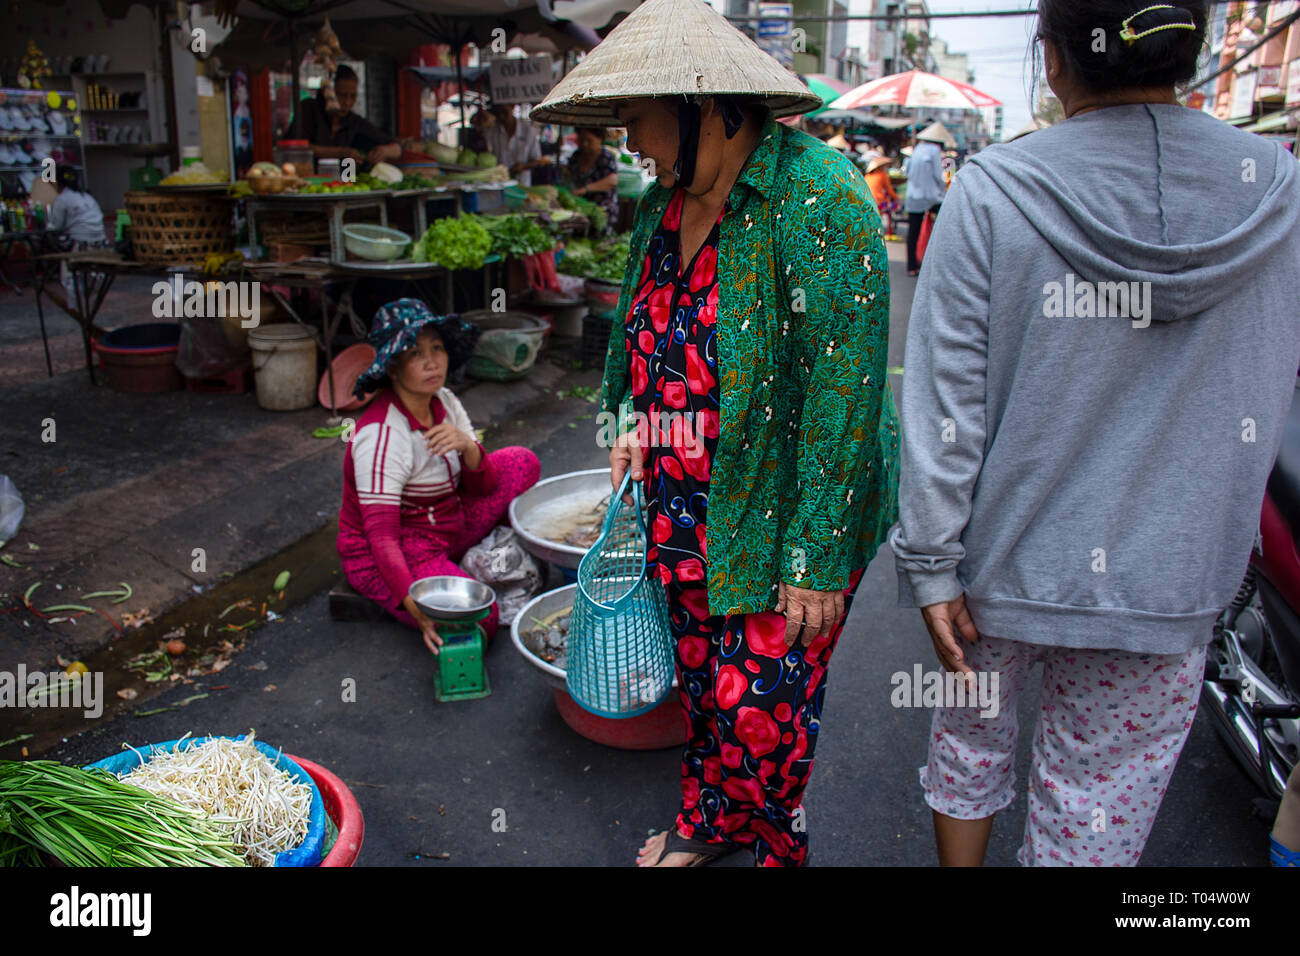 Femme Asiatique âgés dans des costume avec chapeau chinois shopping pour des légumes dans un marché de rue, Ho Chi Minh City, Vietnam. Banque D'Images